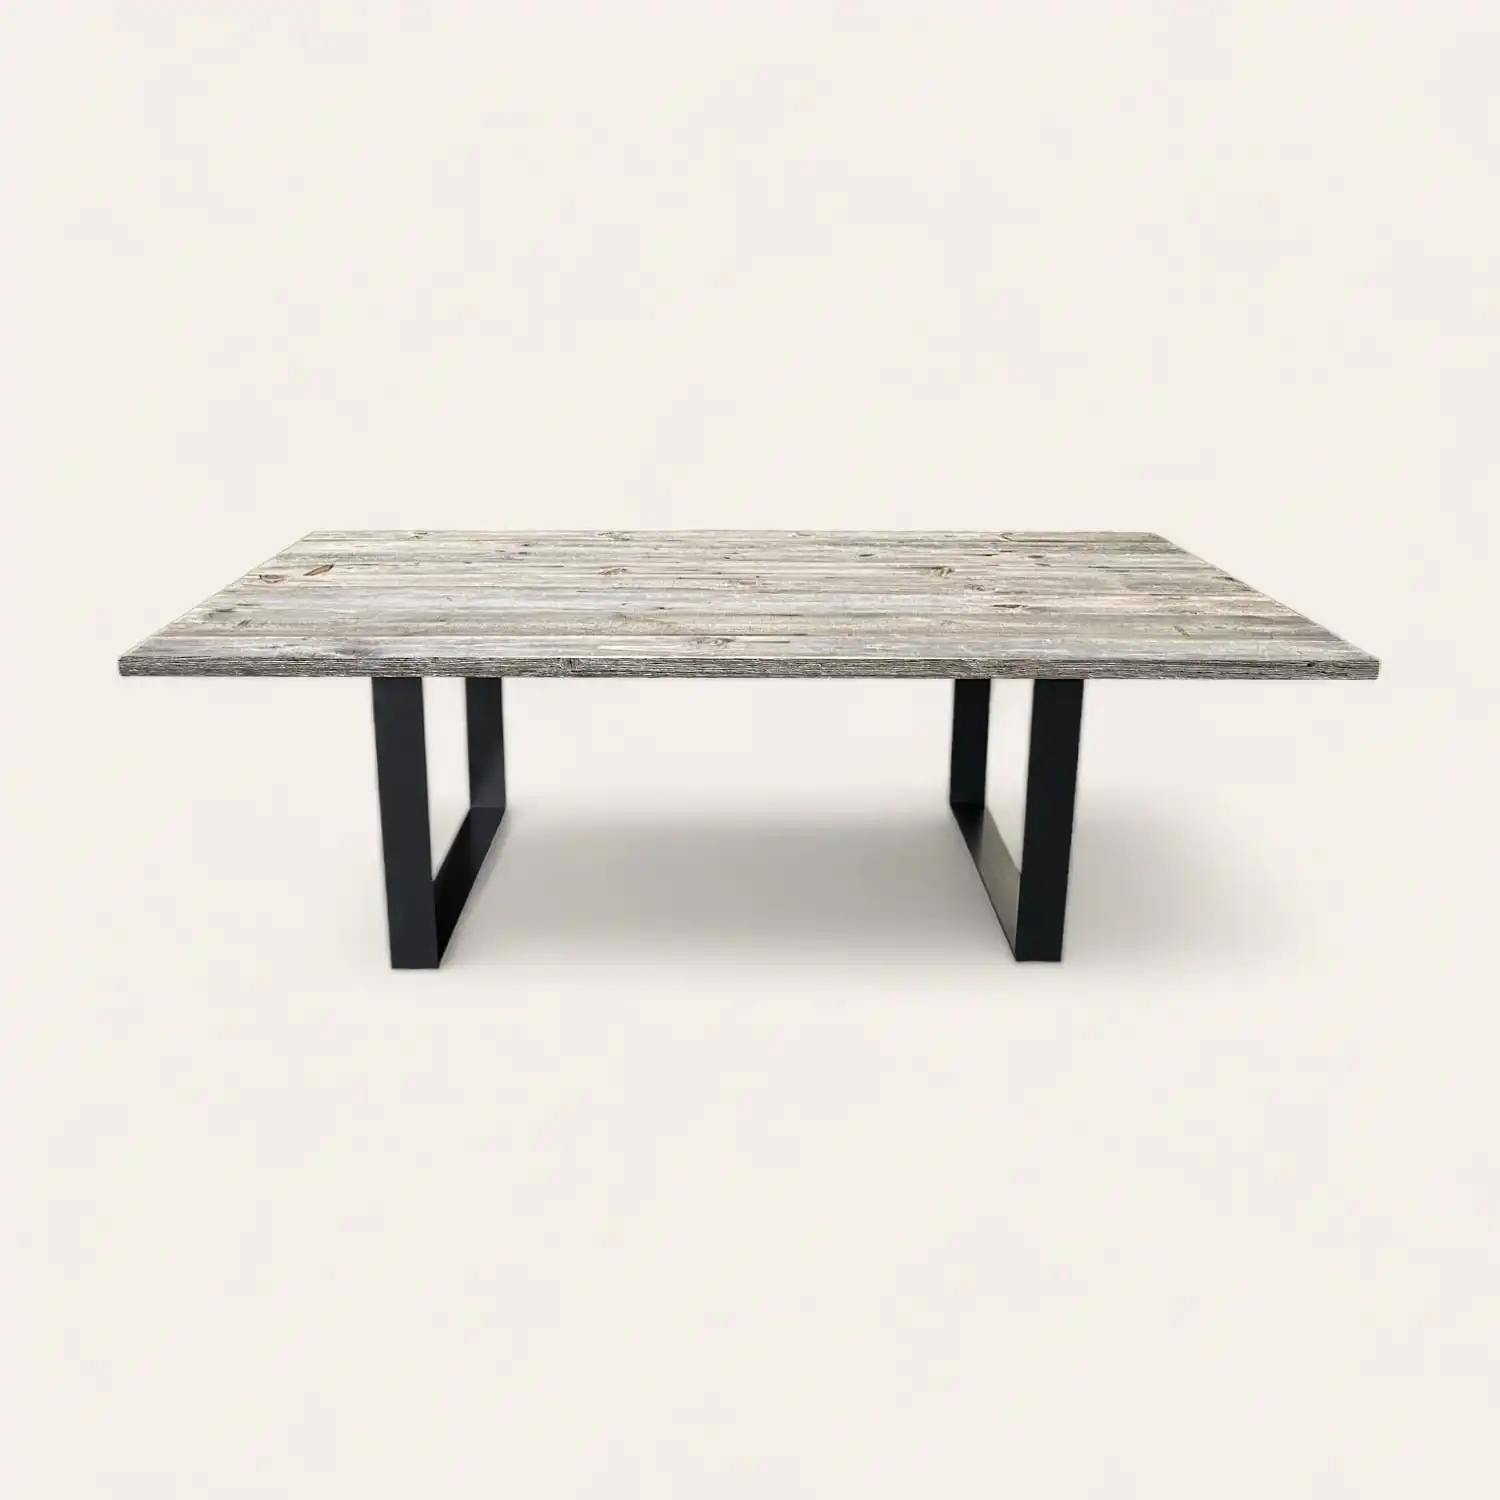  Une table à manger en bois rustique avec des pieds noirs sur un fond blanc. 